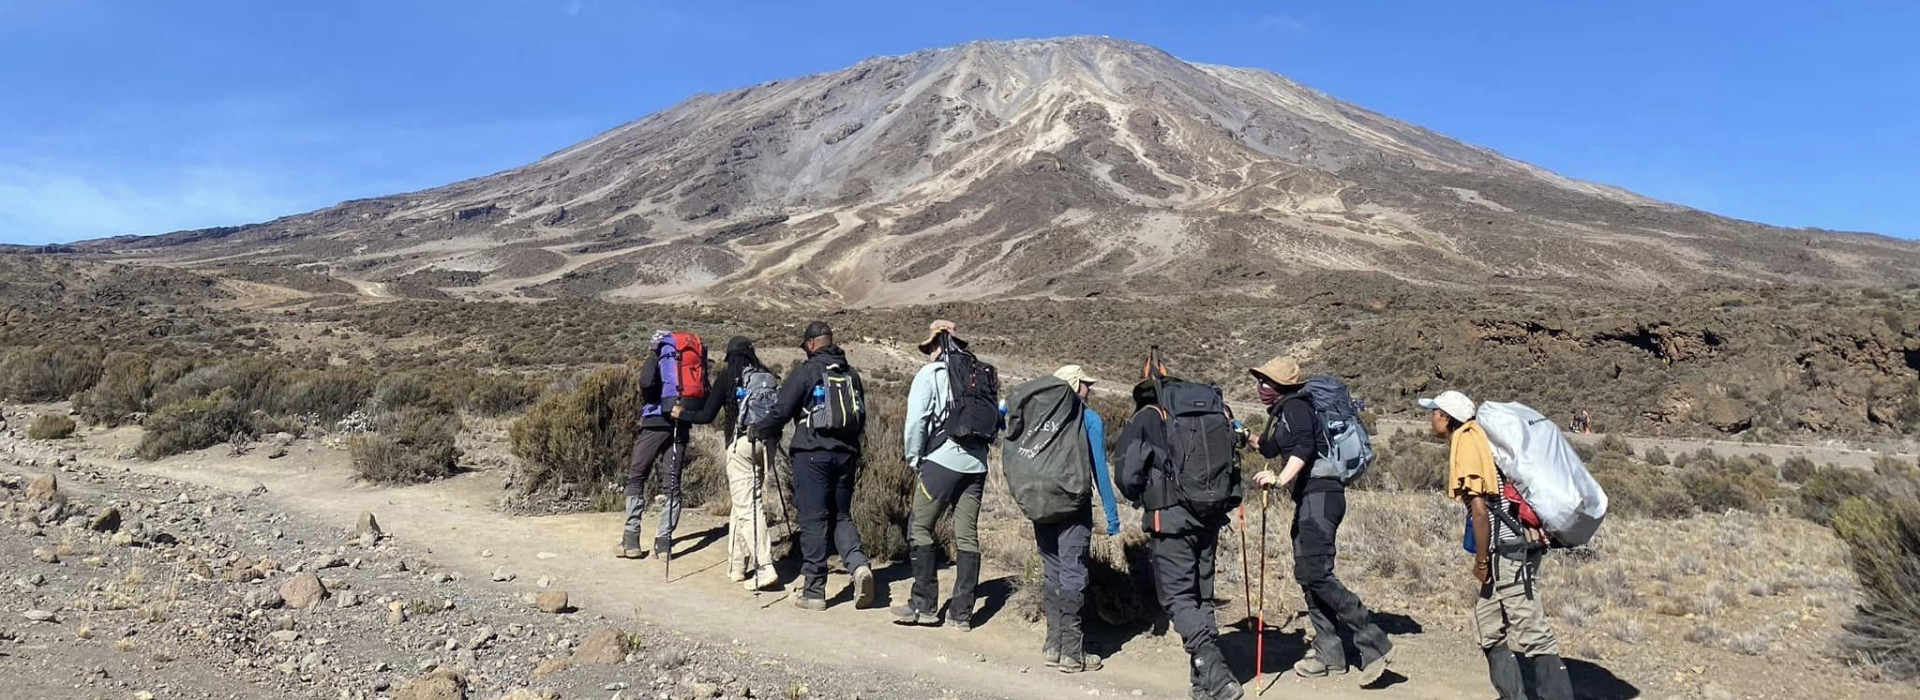 Kilimanjaro Private Climb